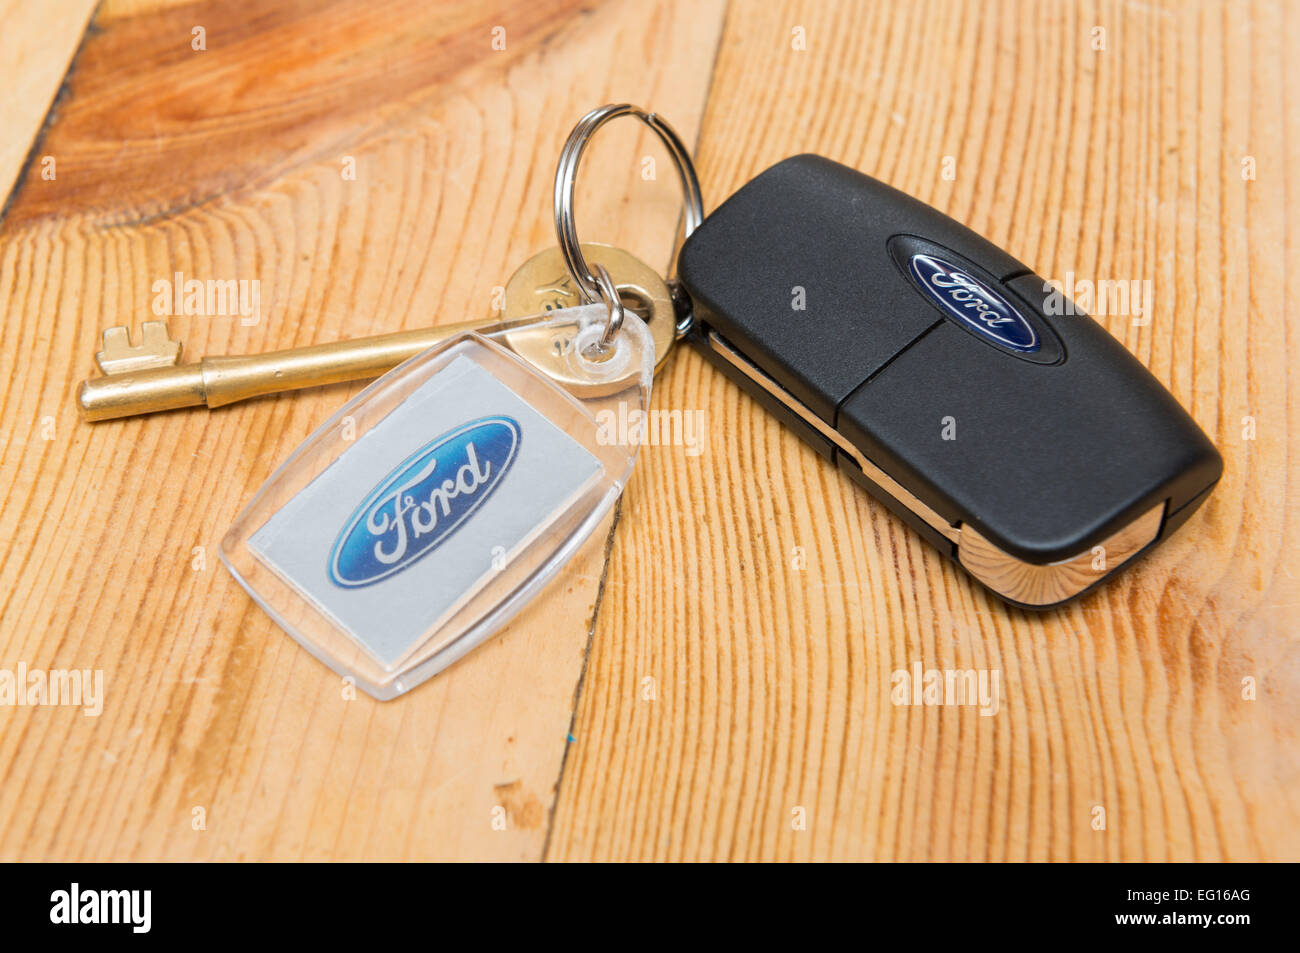 Ford Schlüsselanhänger auf einem hölzernen Küchentisch Stockfotografie -  Alamy